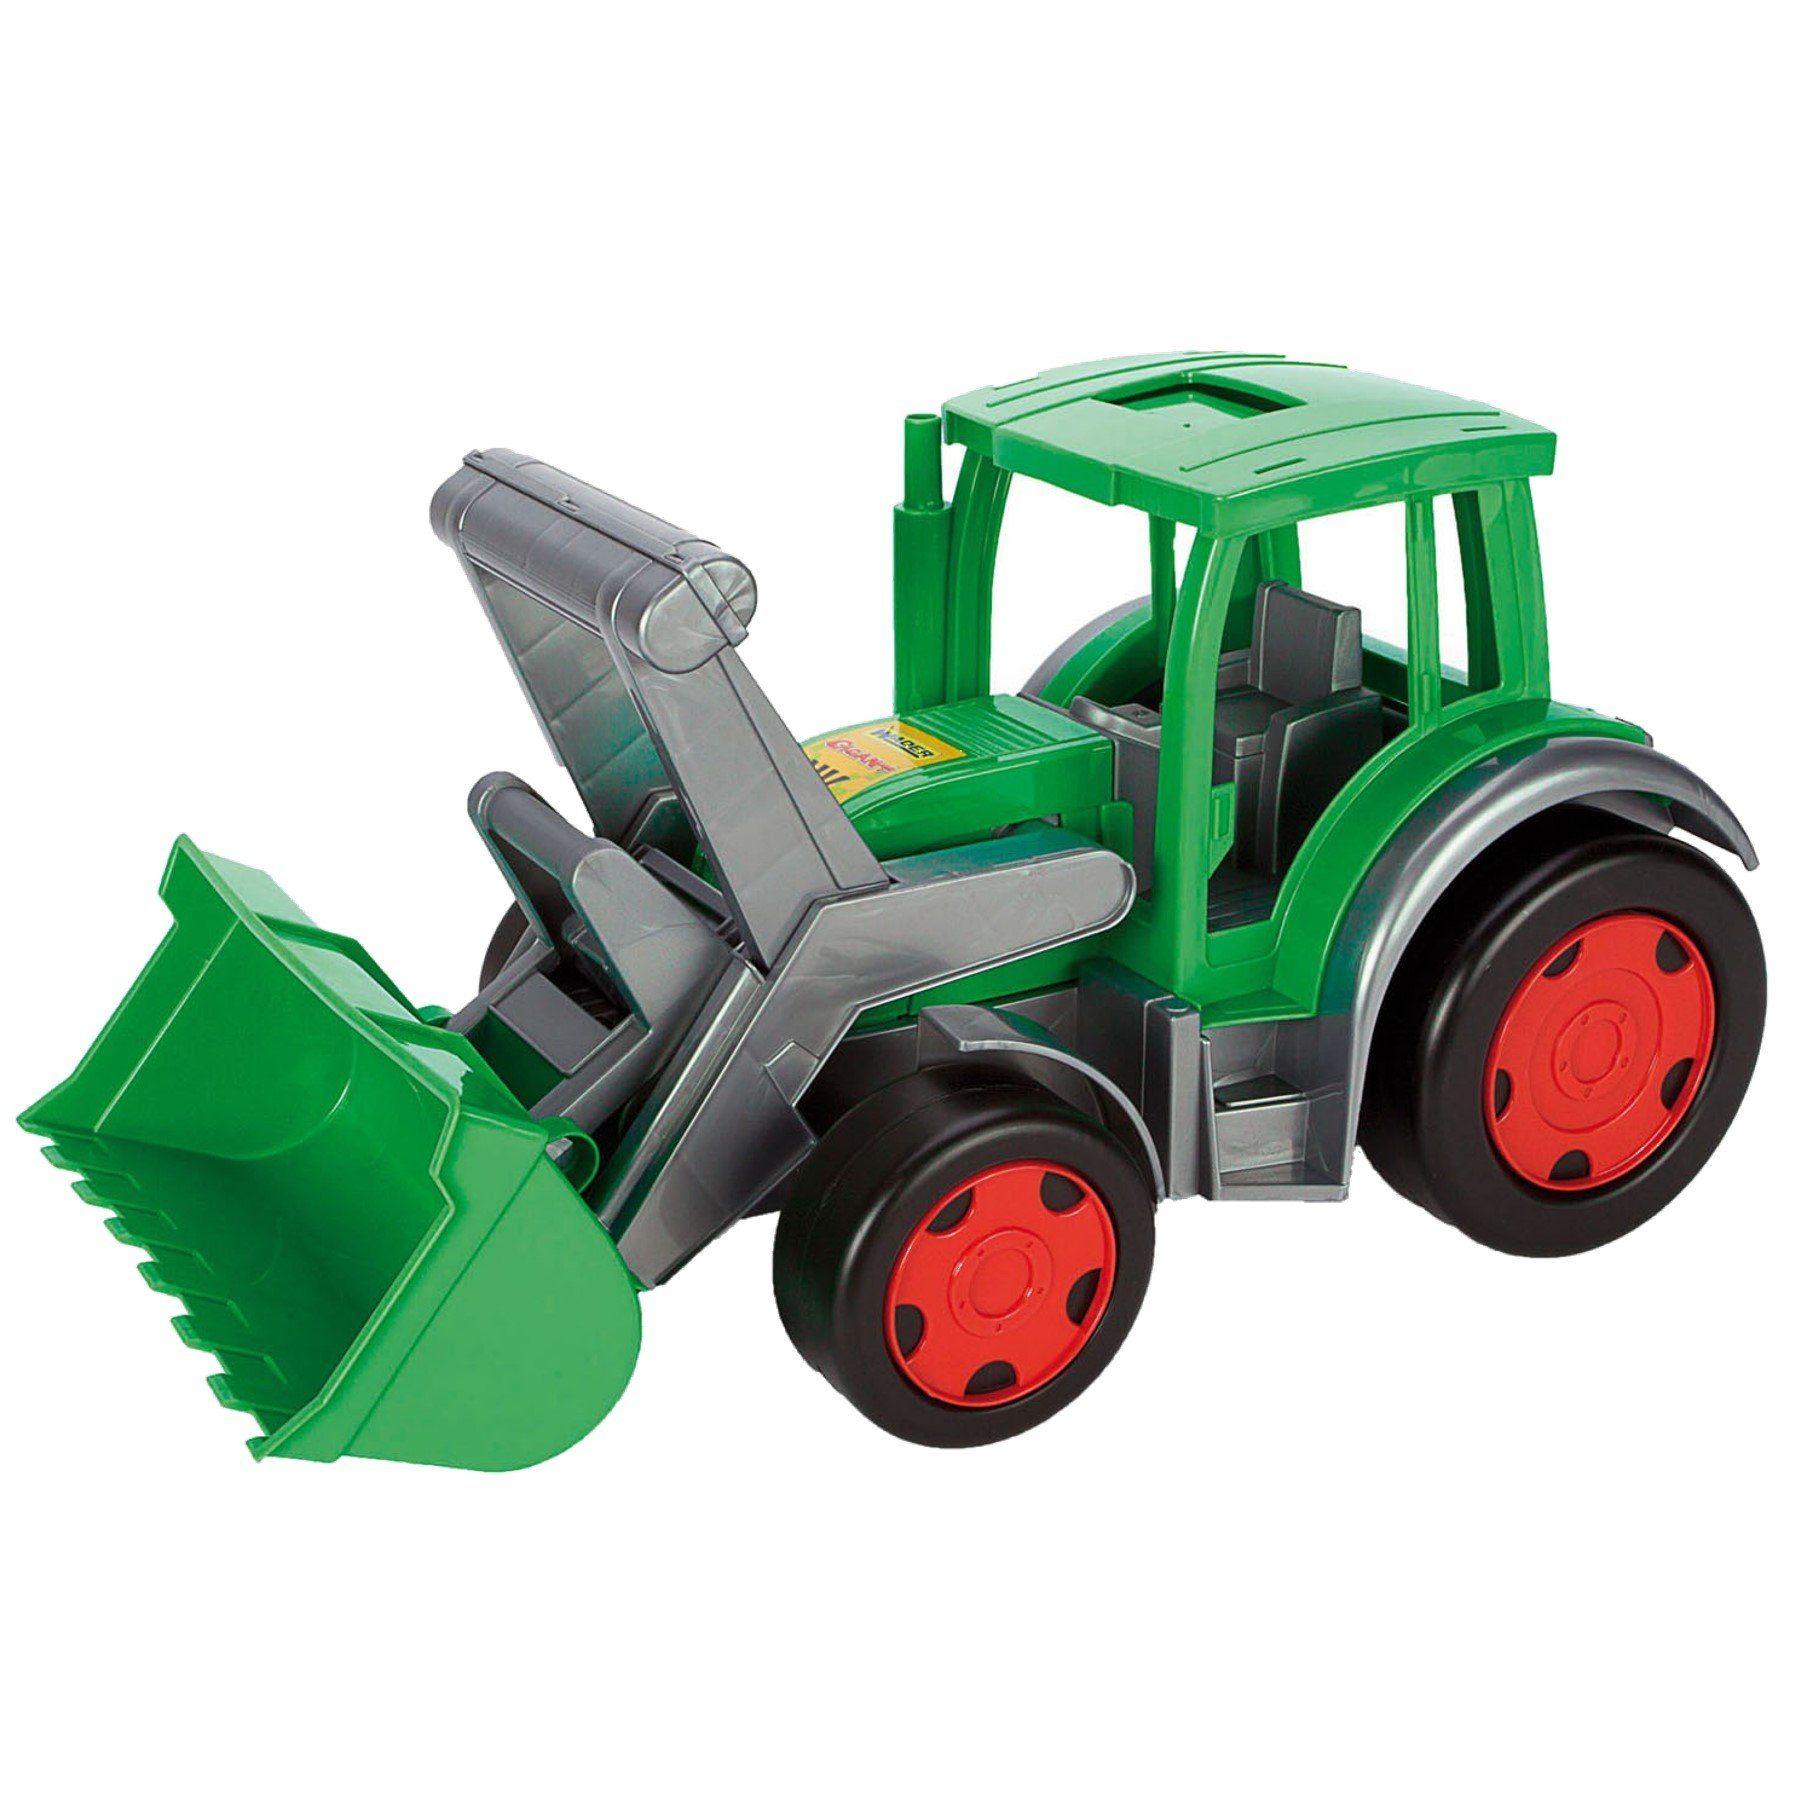 Wader Wozniak Spielzeug-Traktor Gigant Traktor zum Sitzen mit großer Frontschaufel, ab 12 Monaten, (belastbar bis 100 kg, ca. 60 cm, grün, 1-tlg., Aufsitztraktor mit Baggerarm), aus UV-beständigem, recyclebarem Kunststoff, für Kinderzimmer, Garten